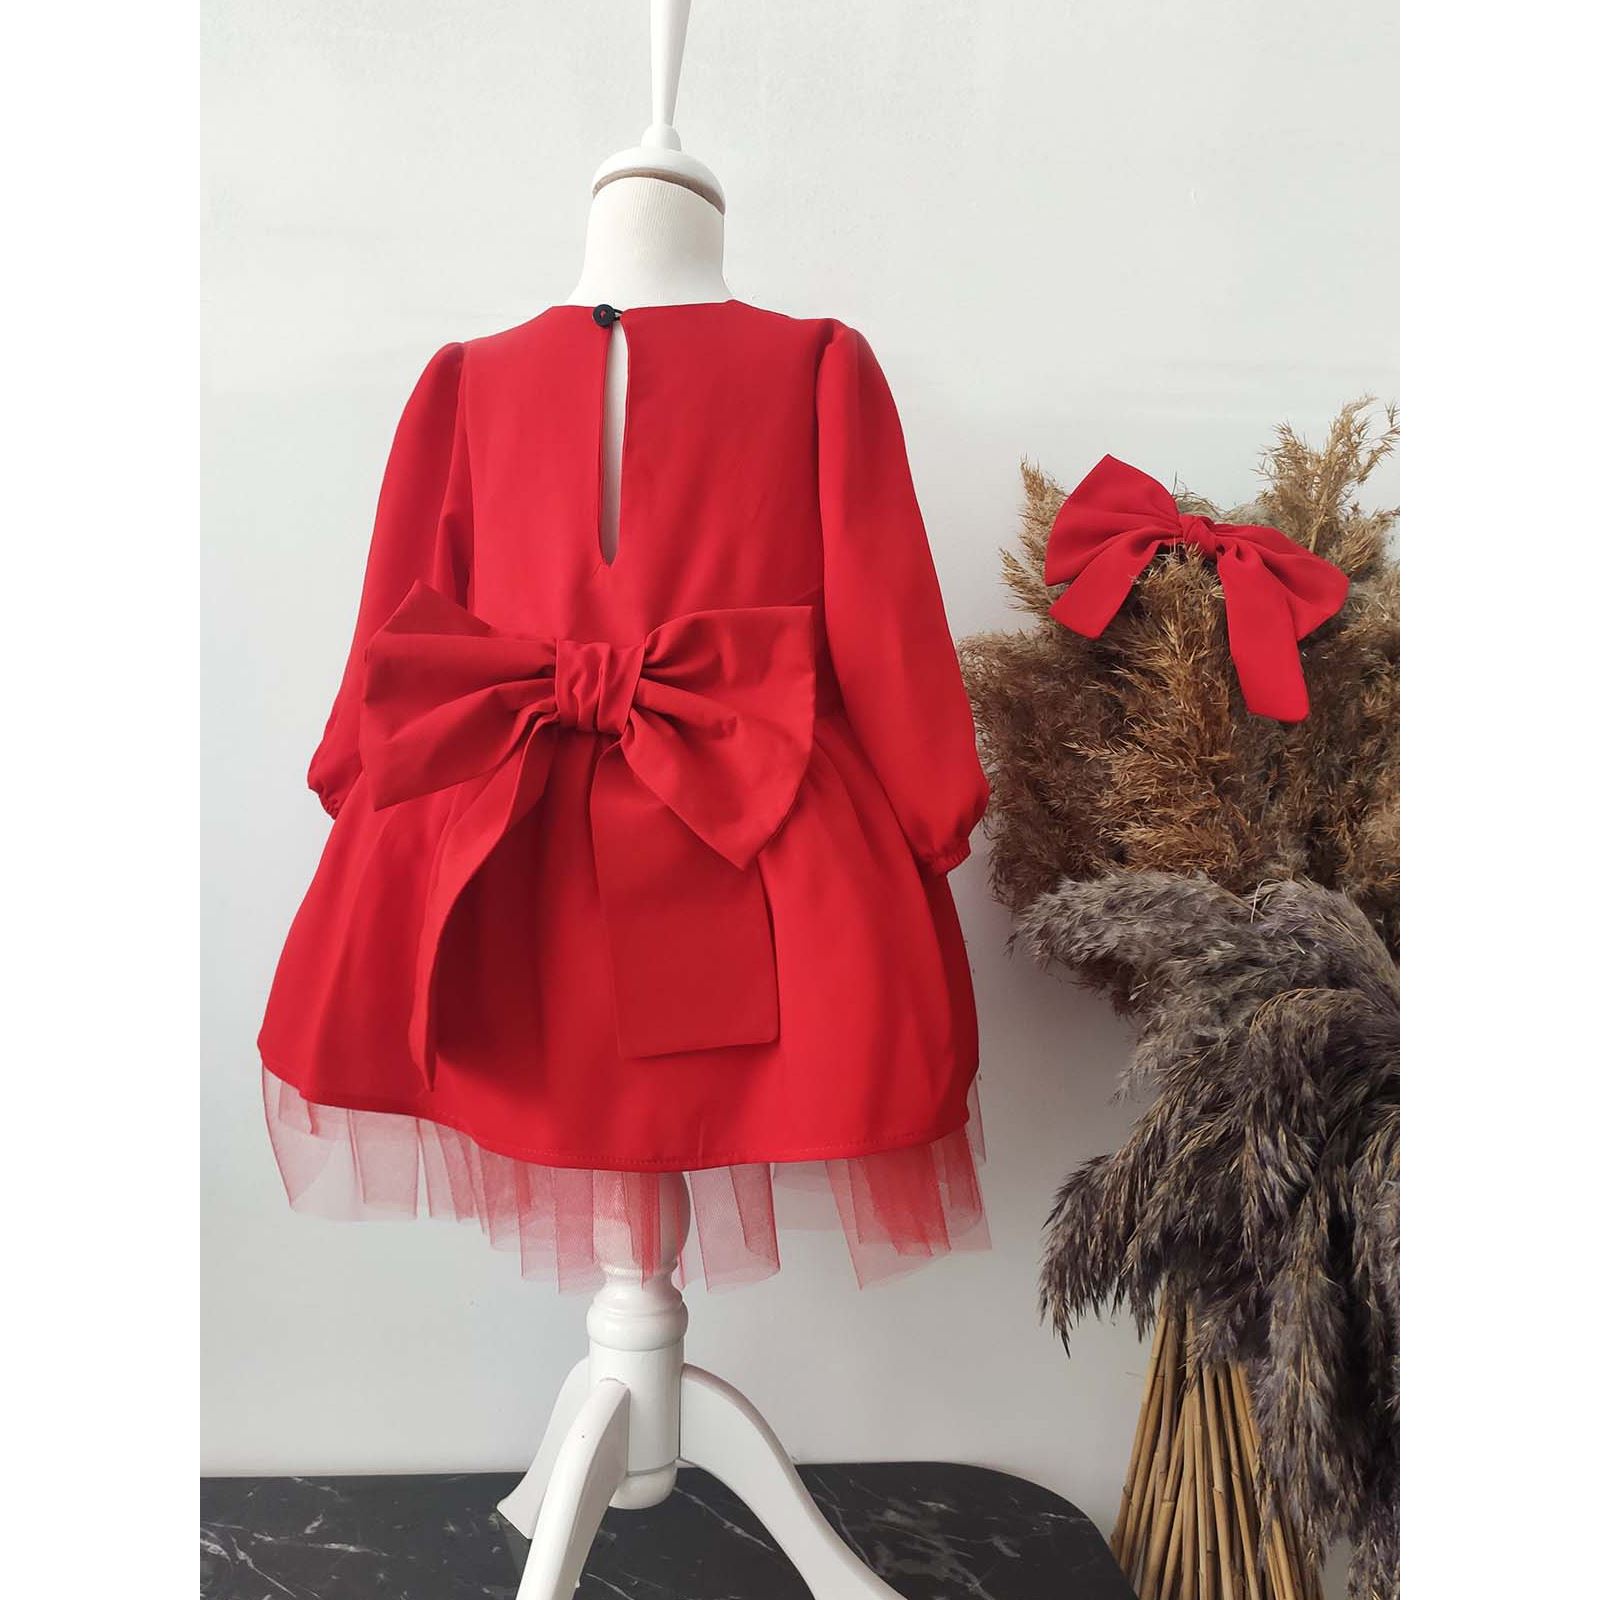 Shecco Babba Kız Çocuk Fiyonklu Tütü Elbise, Uzun Kollu Bandana 6-10 Yaş Abiye Kırmızı